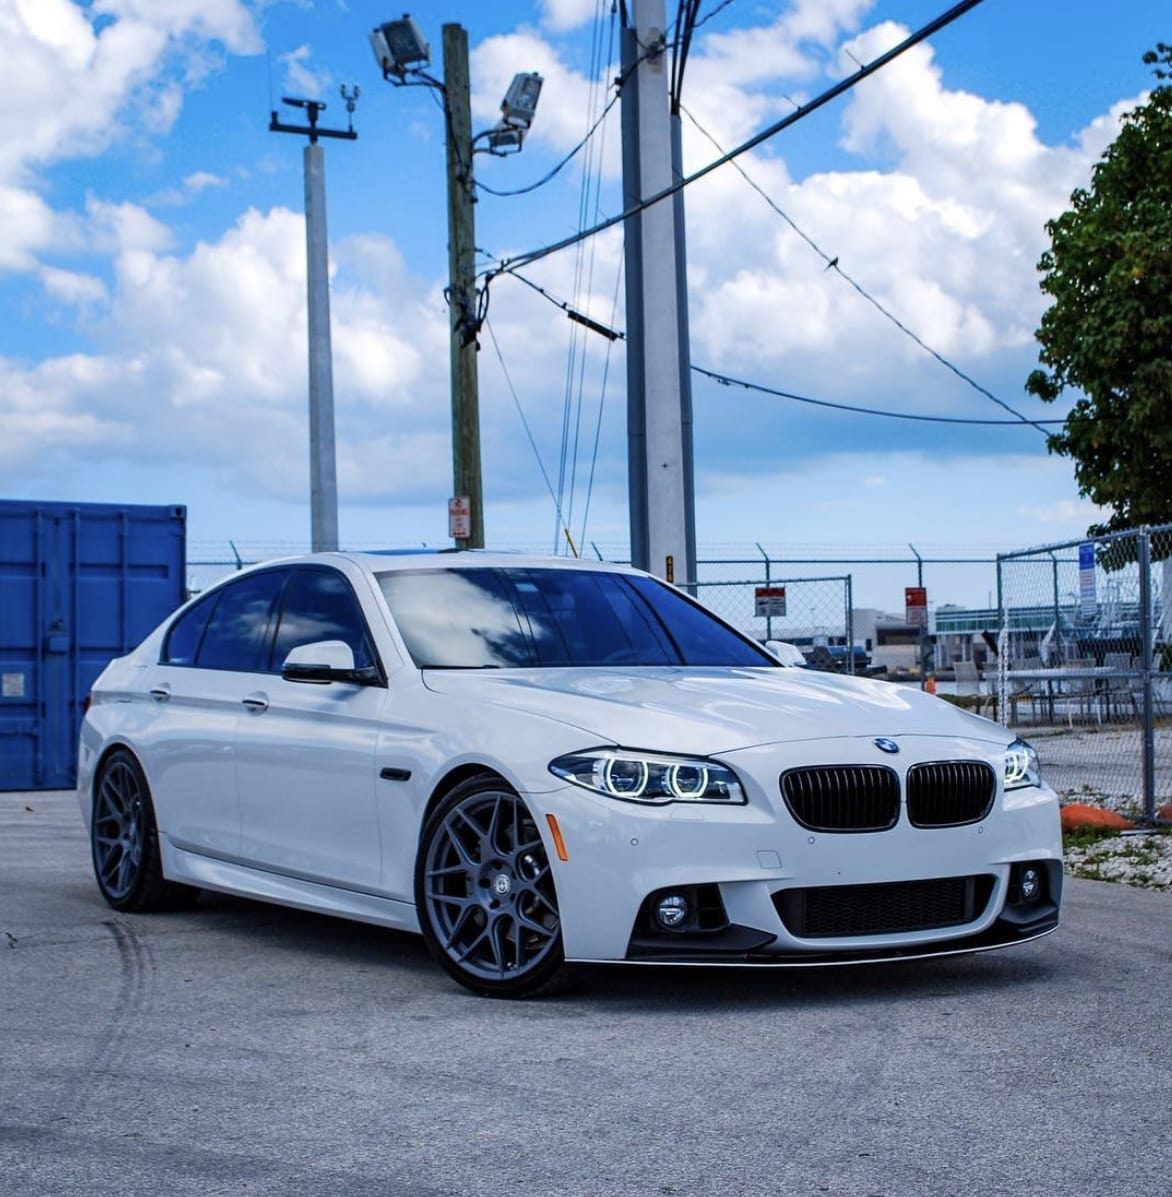 BMW F10 5 Series – Euros West Coast